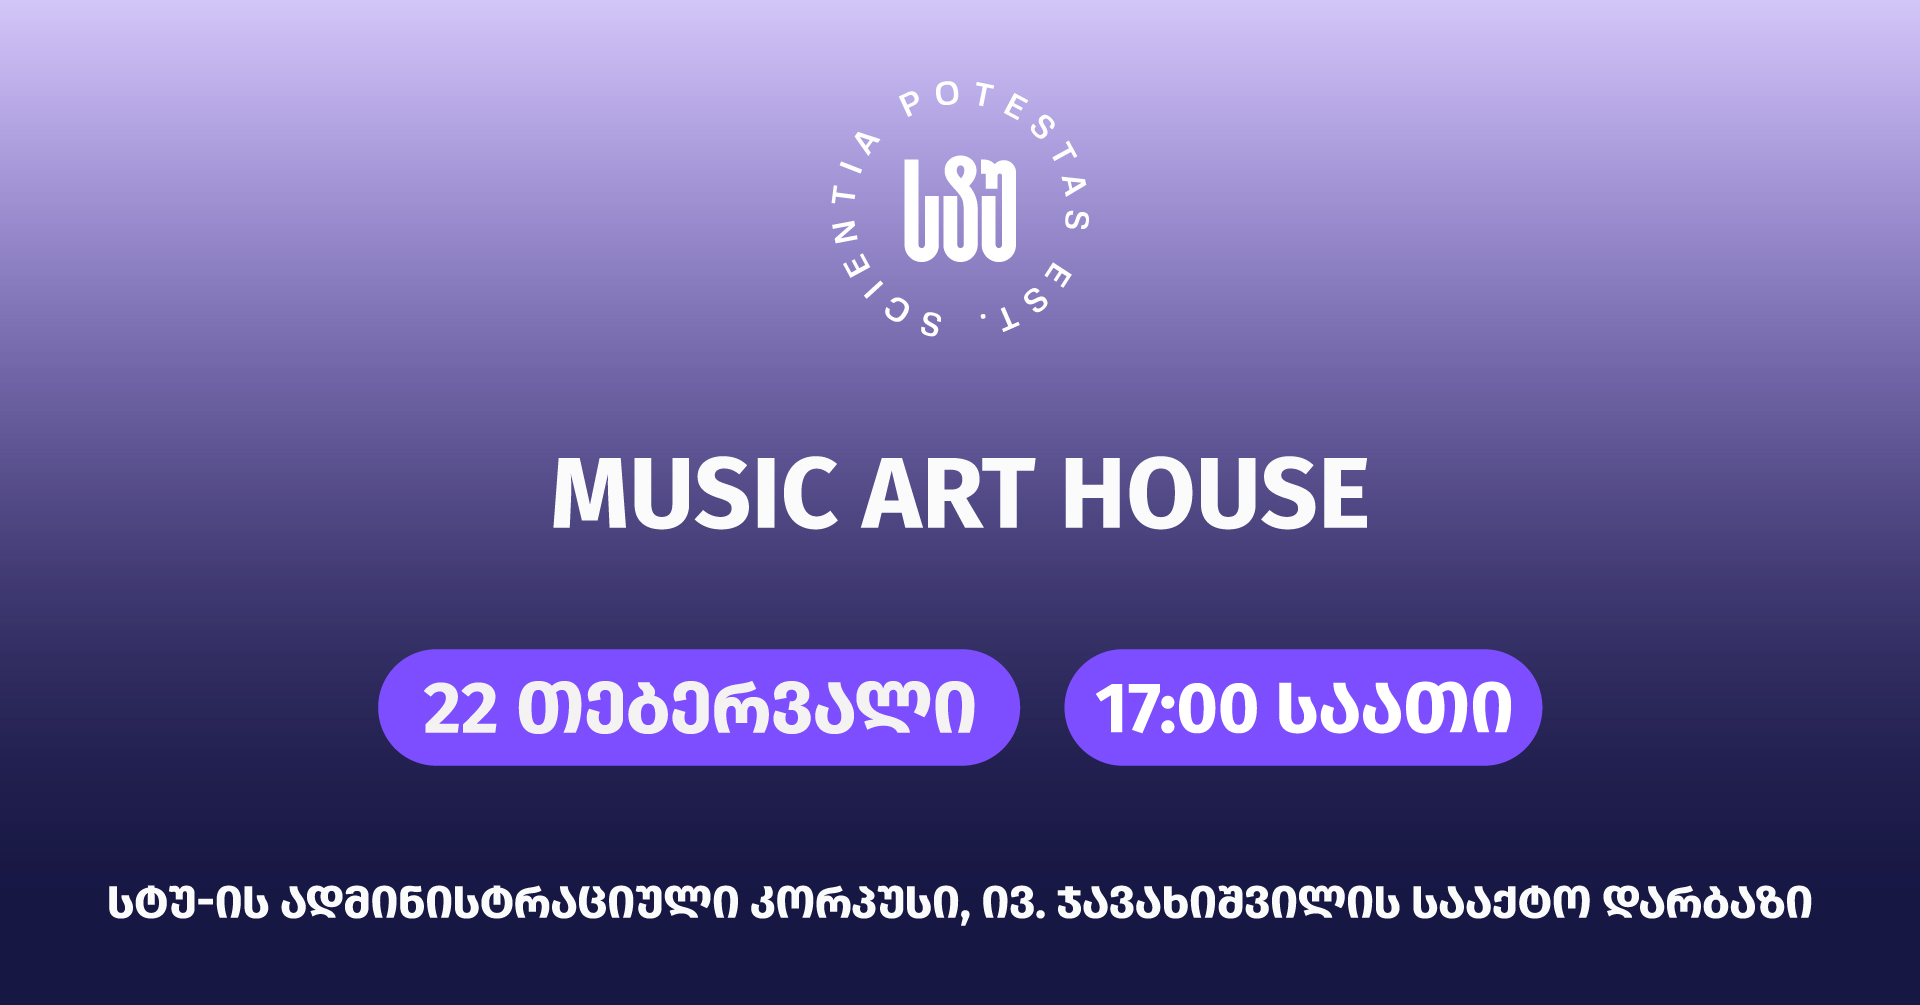 სტუ სტუდენტებს საუნივერსიტეტო შემოქმედებით ჯგუფ Music Art House-ის ახალი თაობის კონცერტზე იწვევს